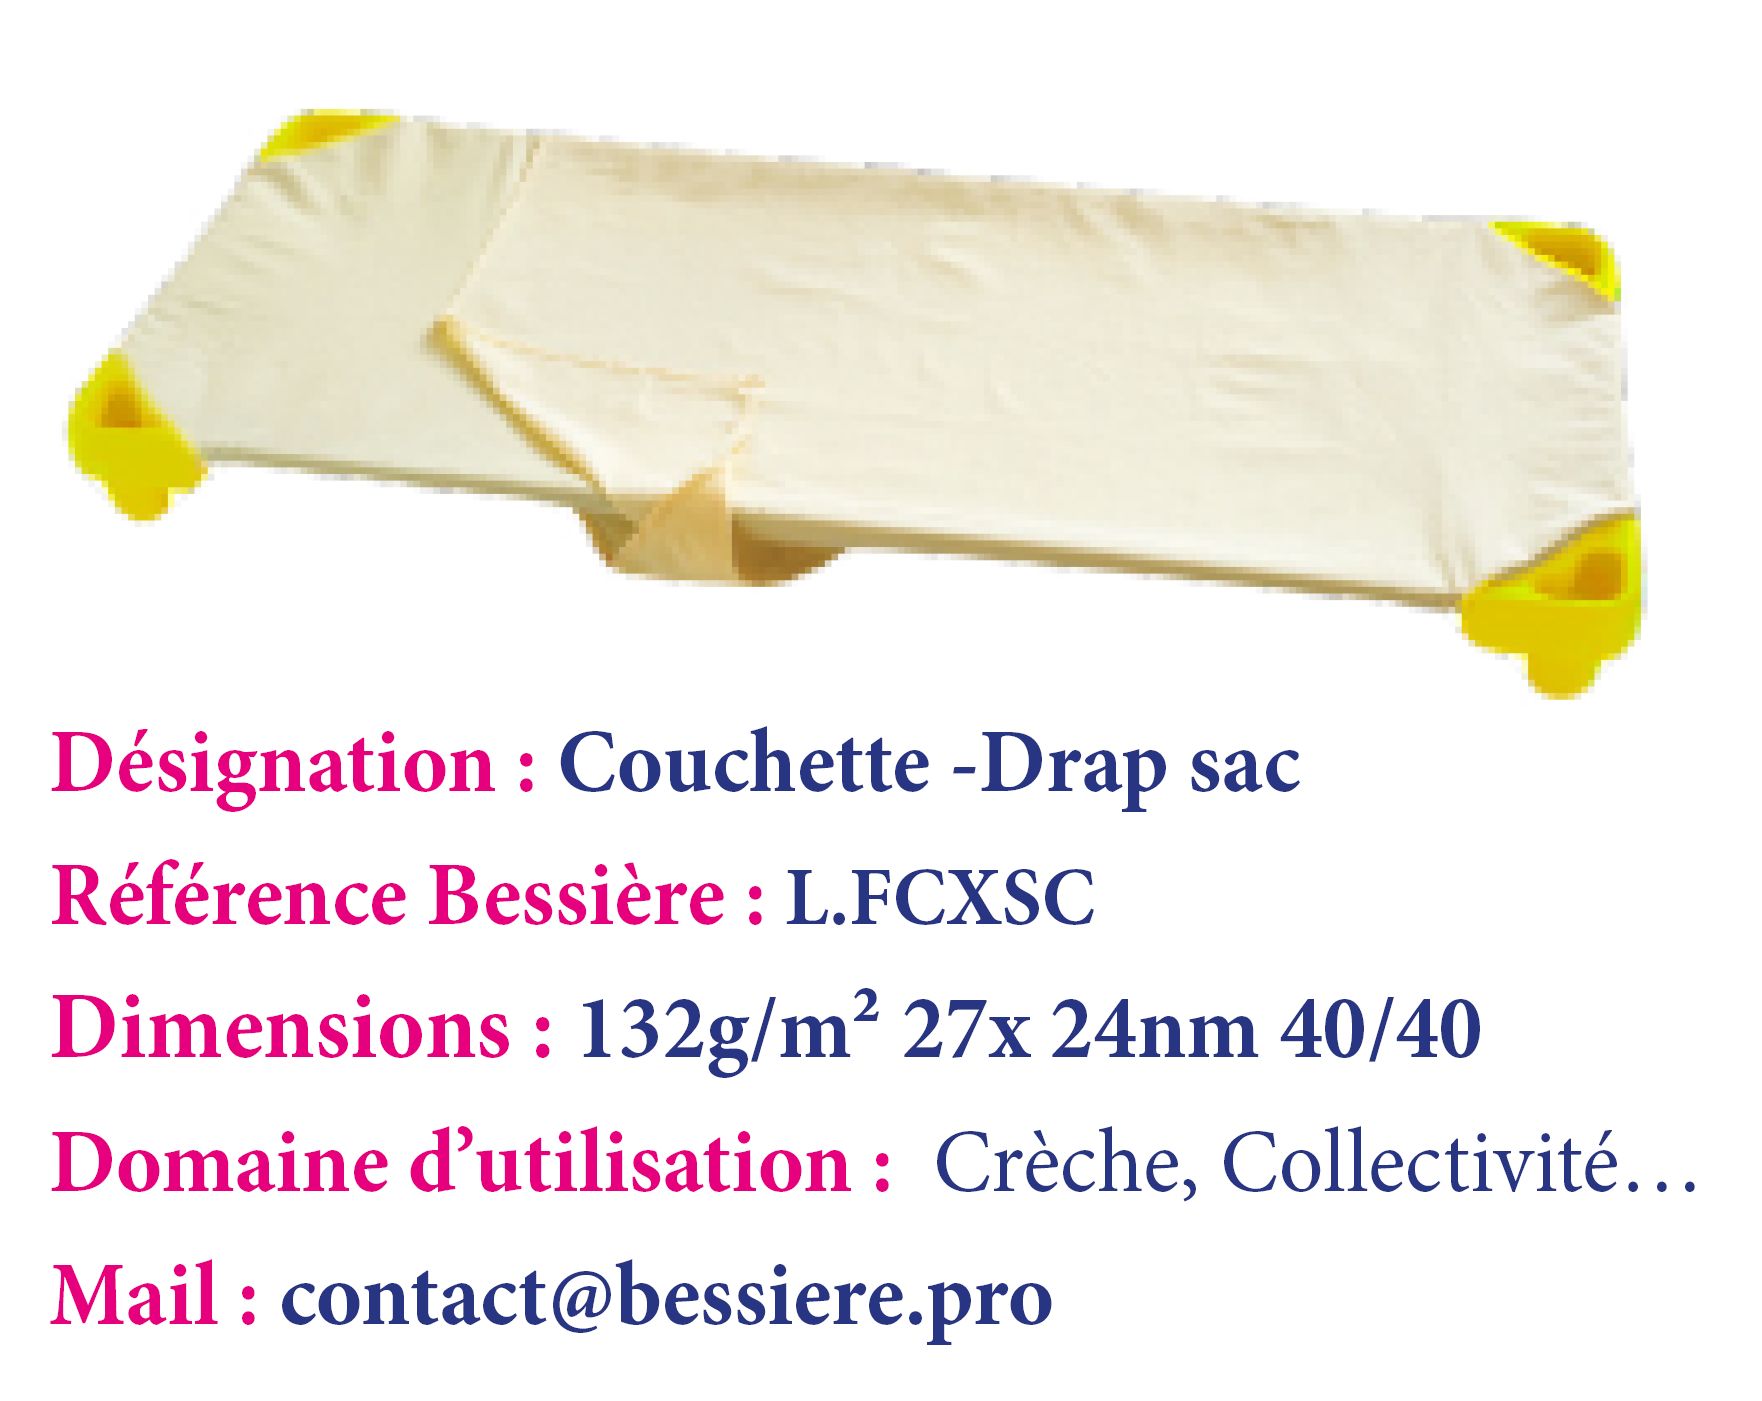 Couchette drap sac_0